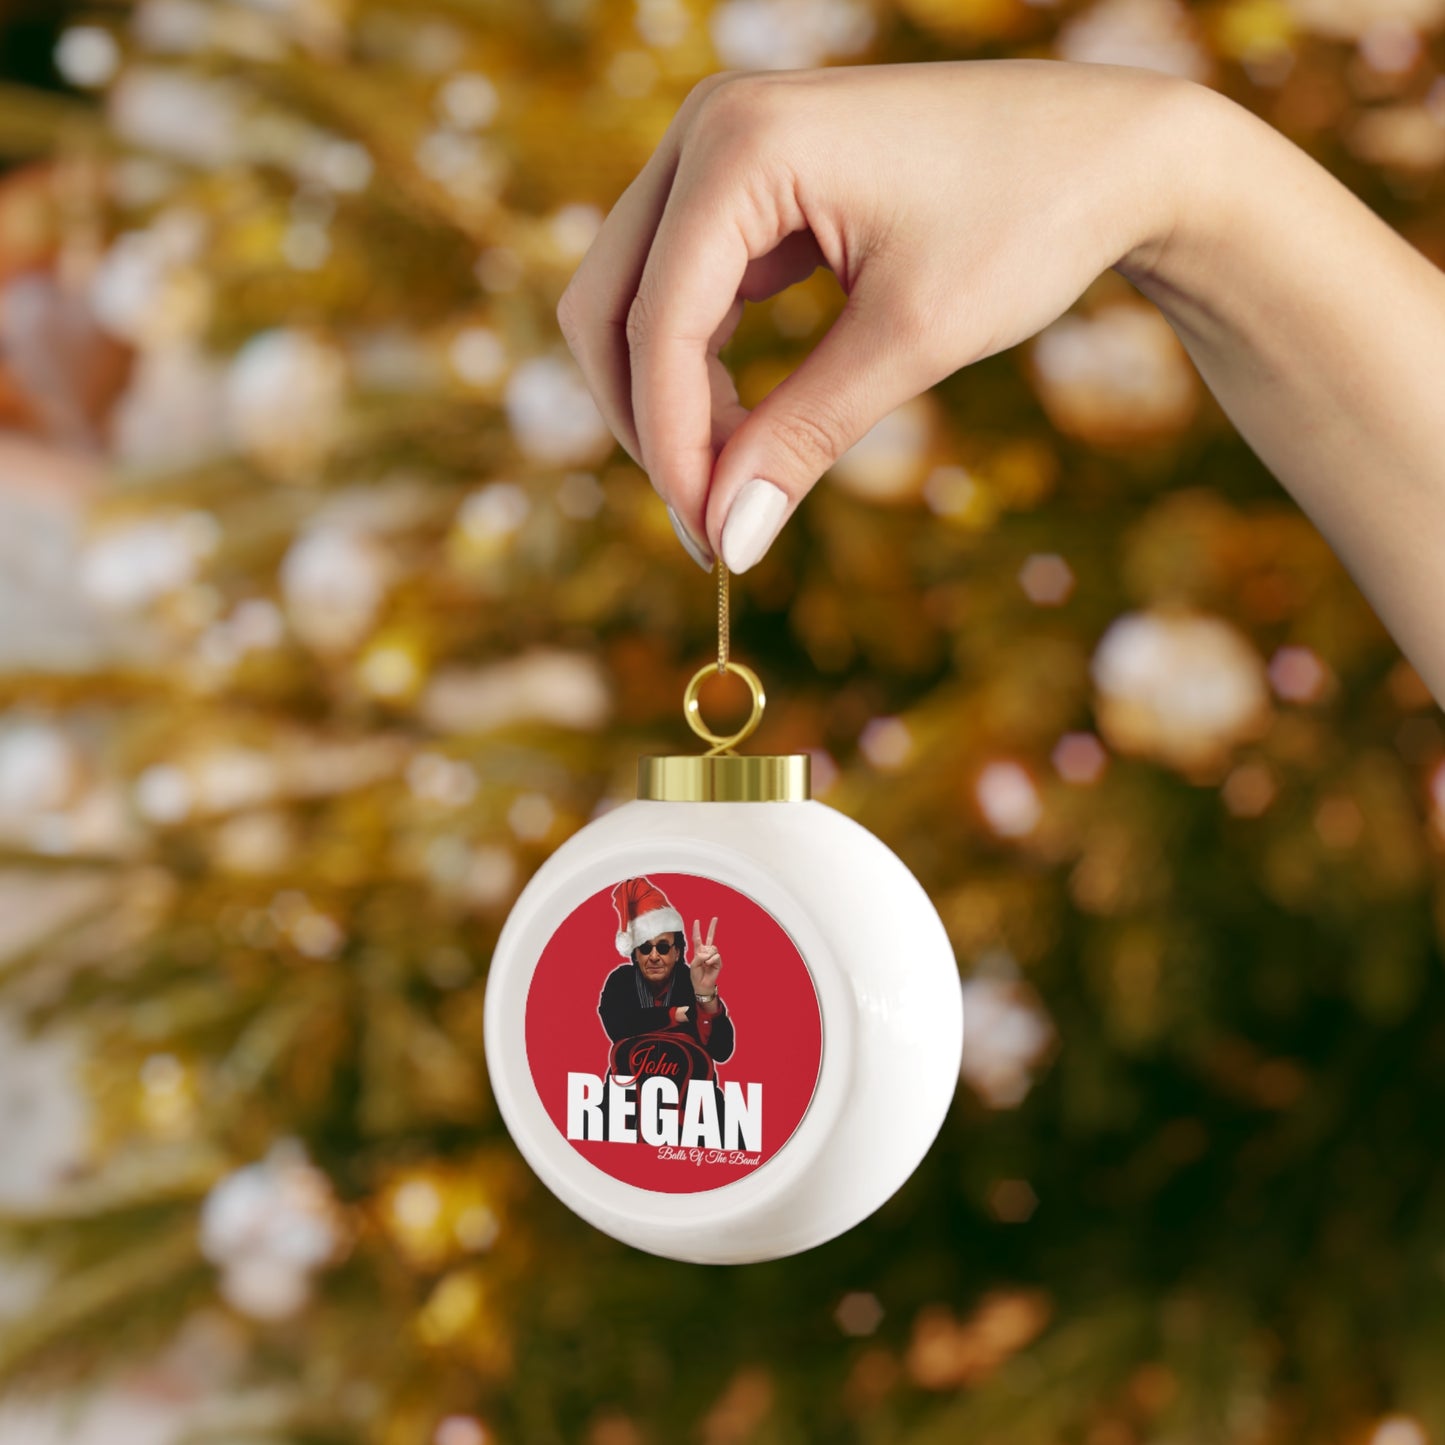 John Regan Christmas Ball Ornament #1